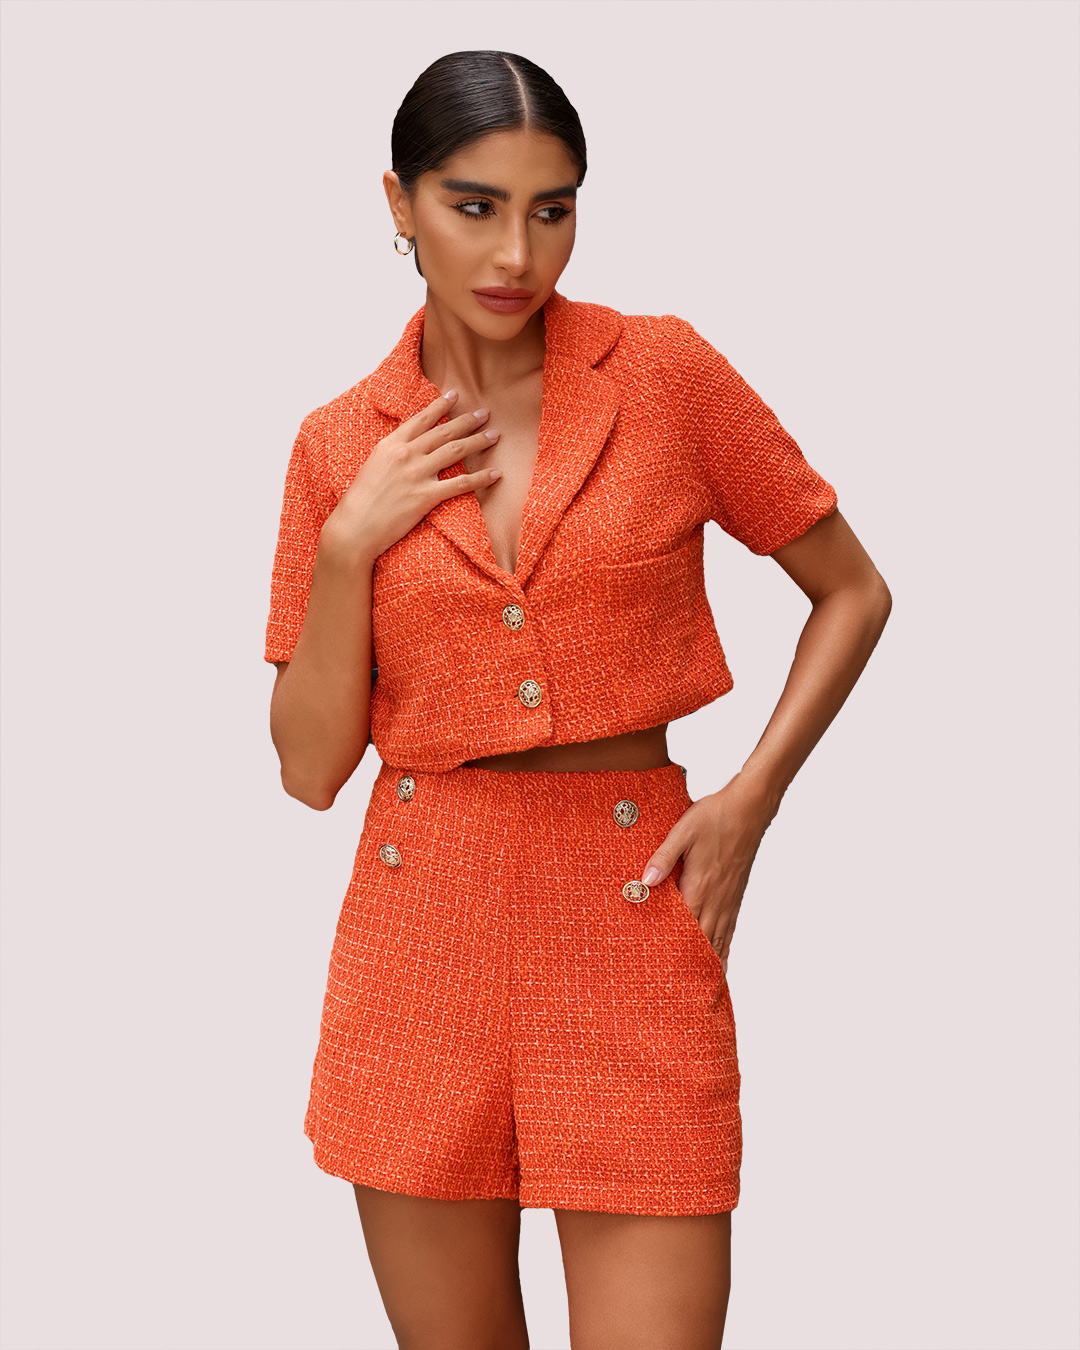 Dot Clothing - Set Dot Clothing Orange Tweed - 1876LARAN